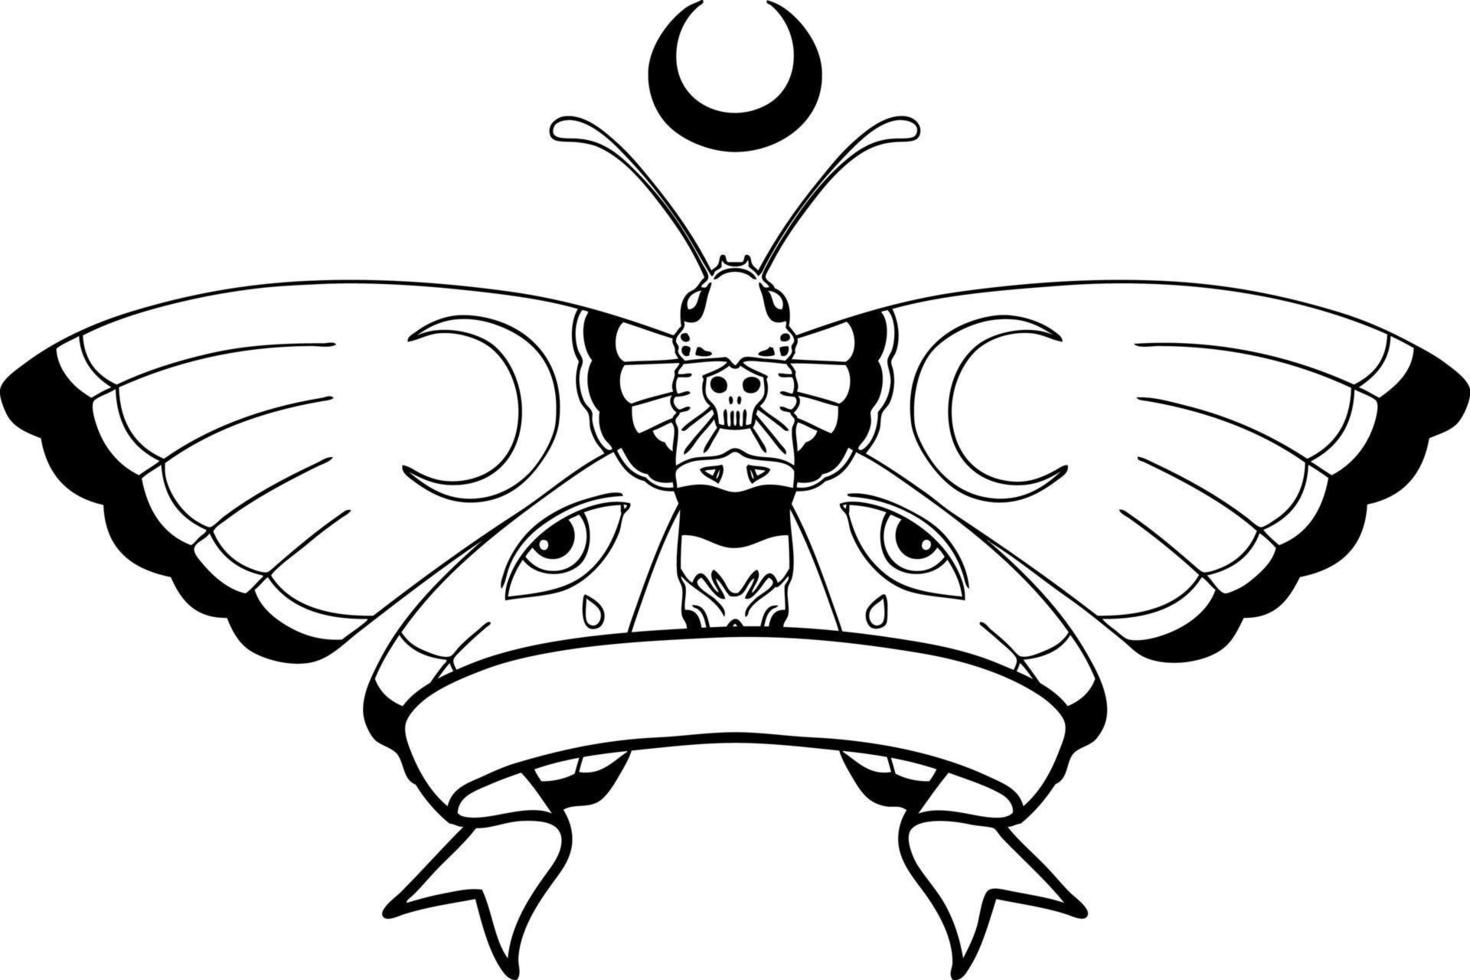 tatouage au trait noir traditionnel avec bannière d'un papillon de nuit vecteur